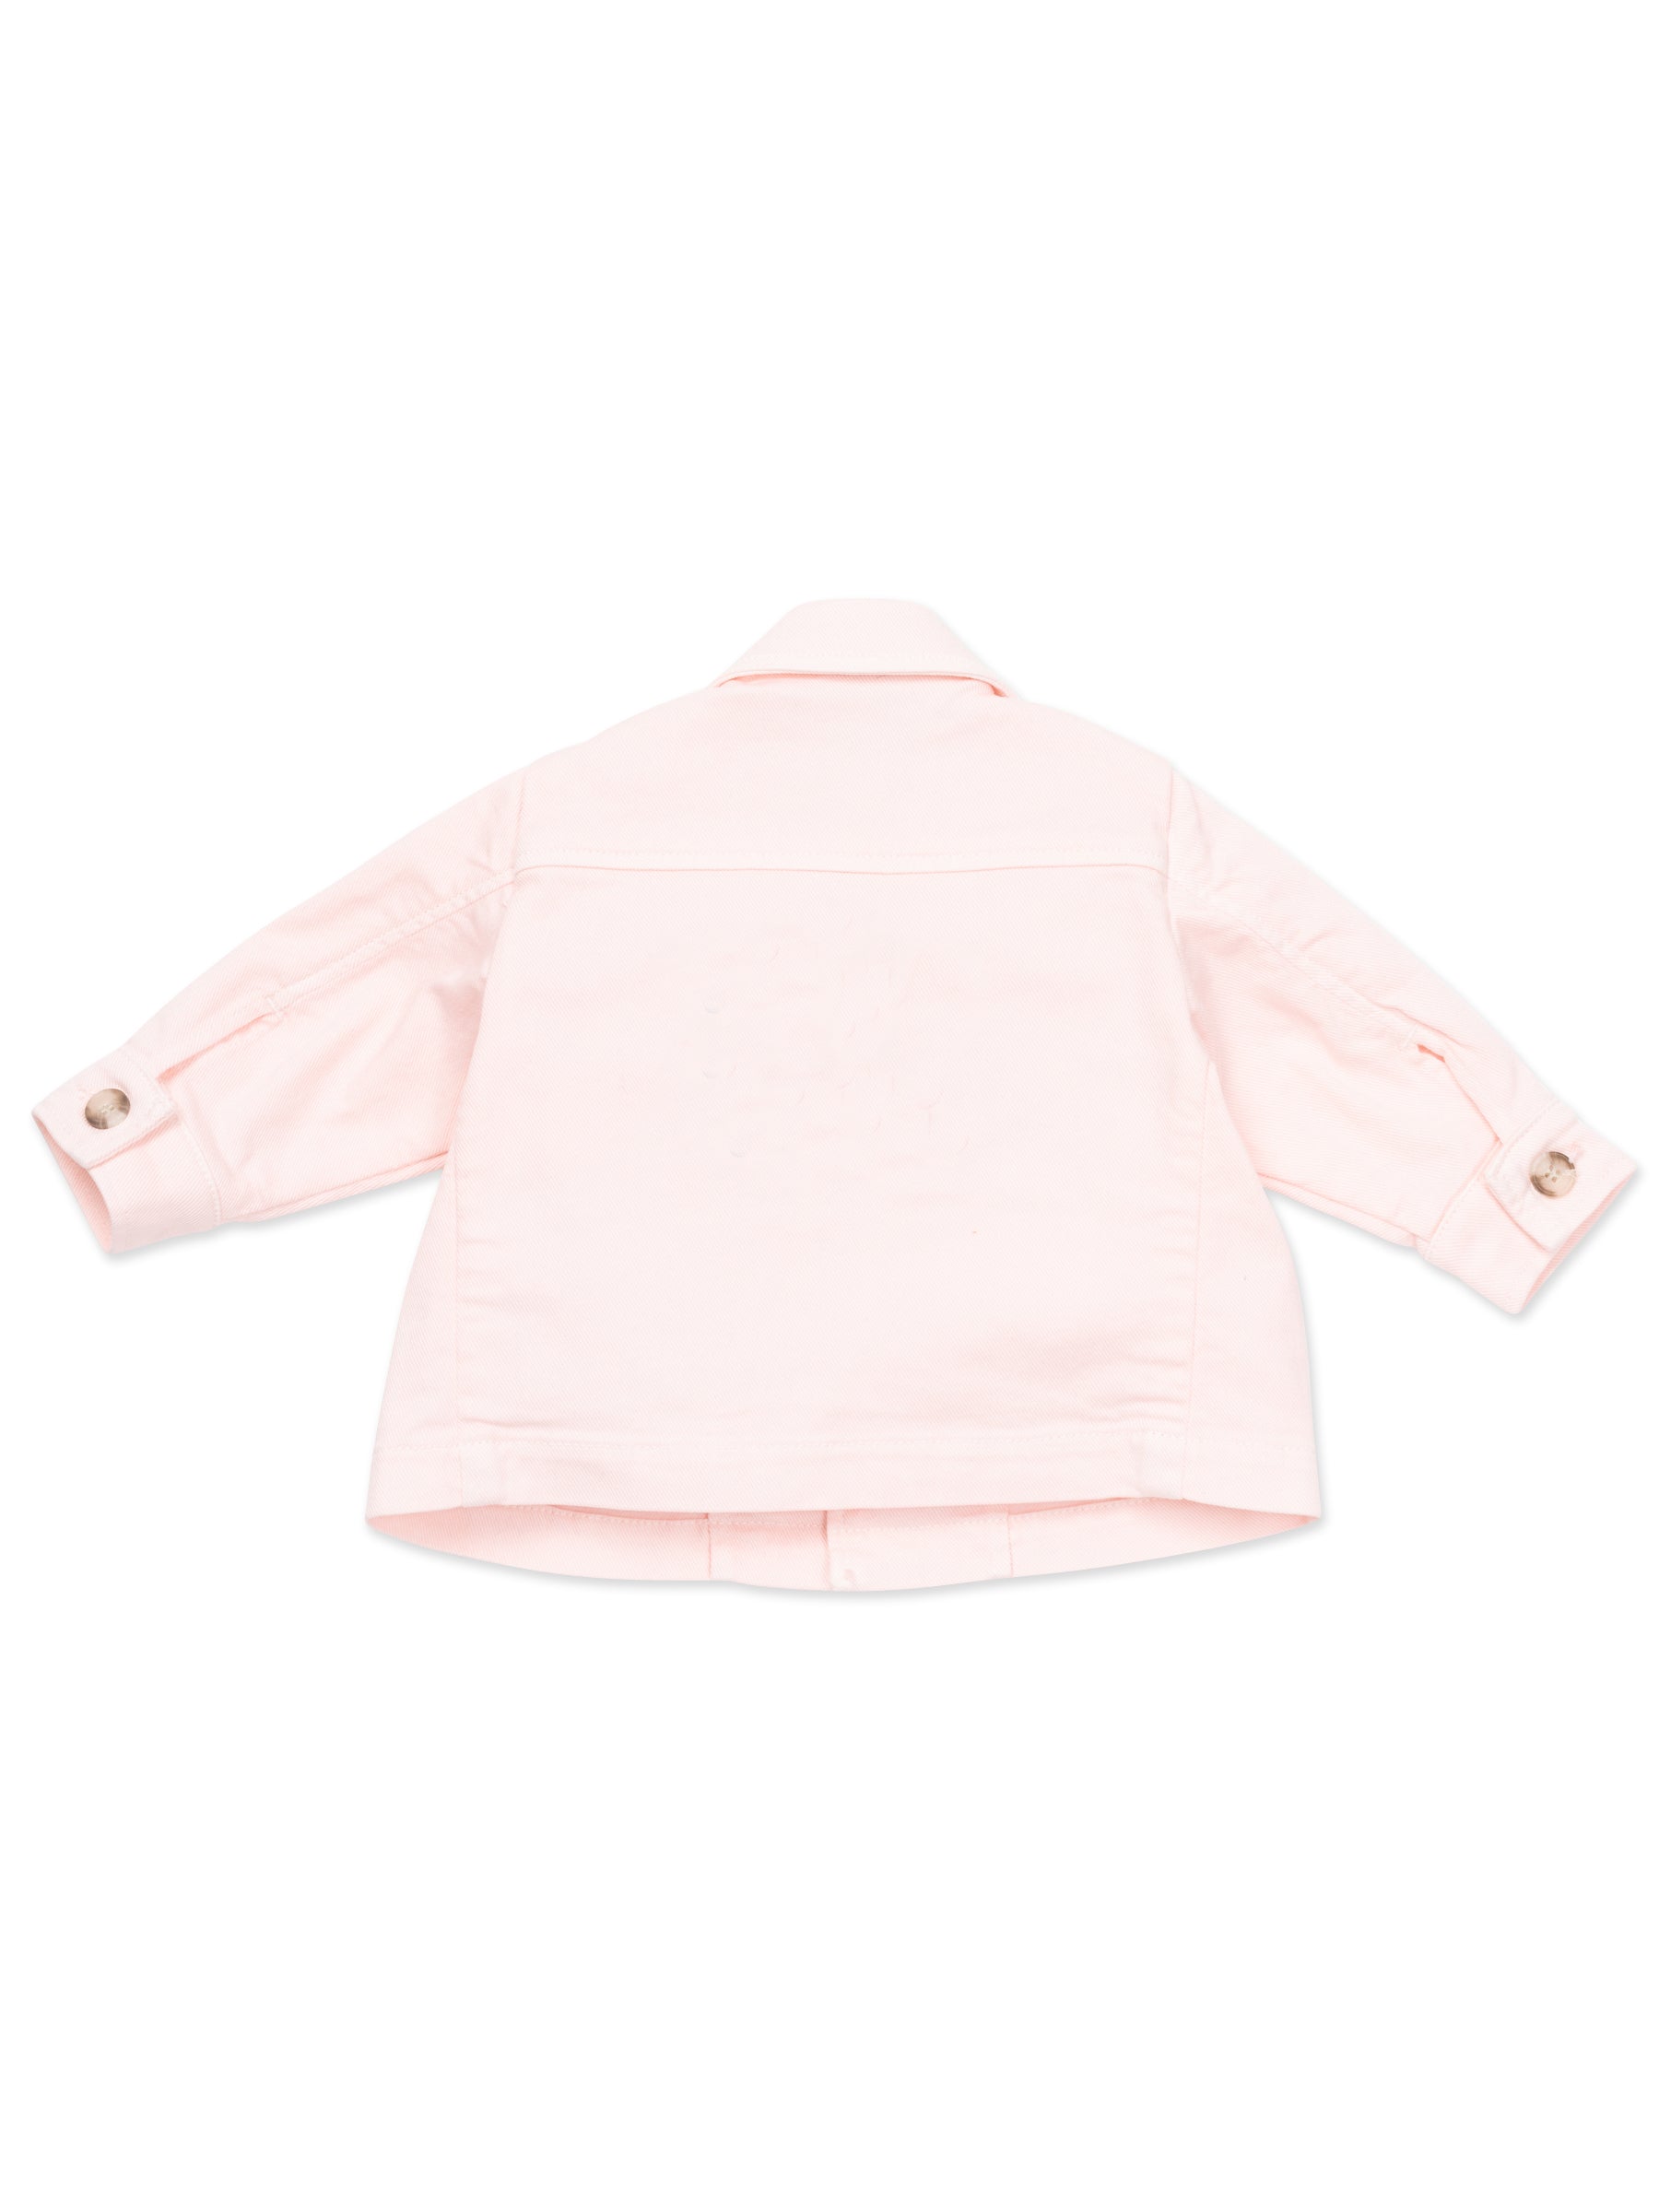 Baby Girls Pink Cotton Jacket